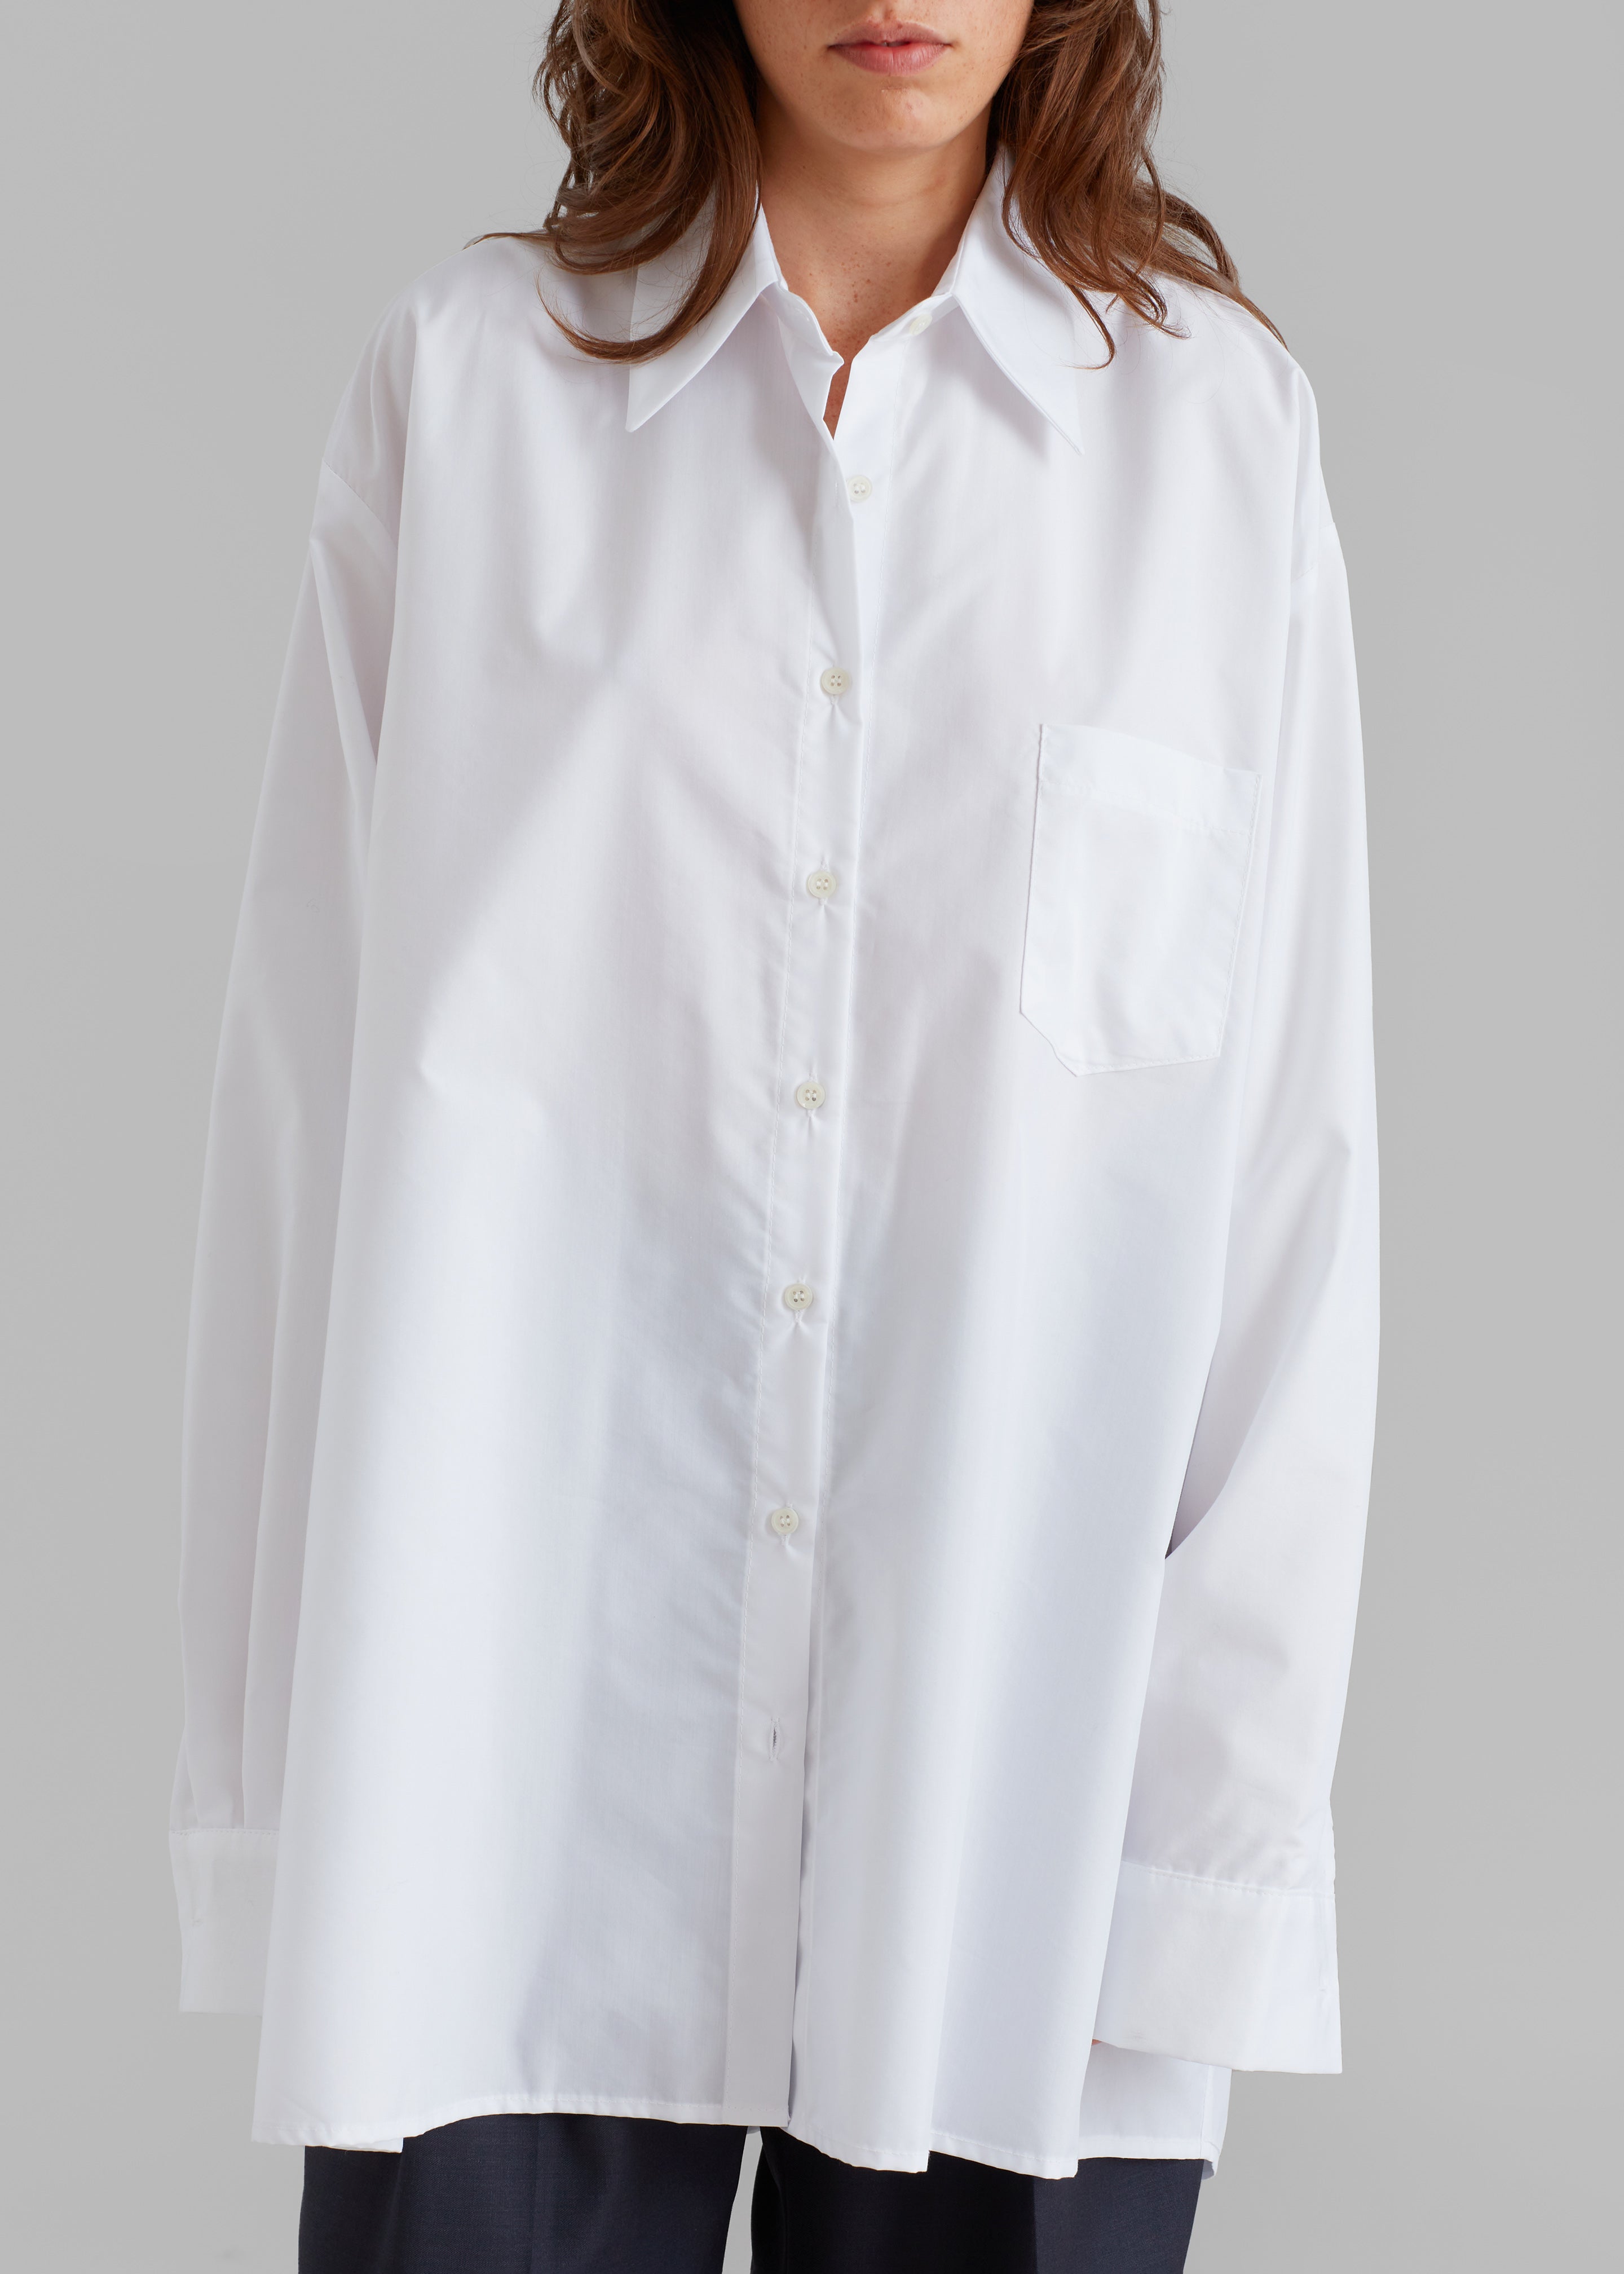 Jany Tie-Neck Shirt - White - 6